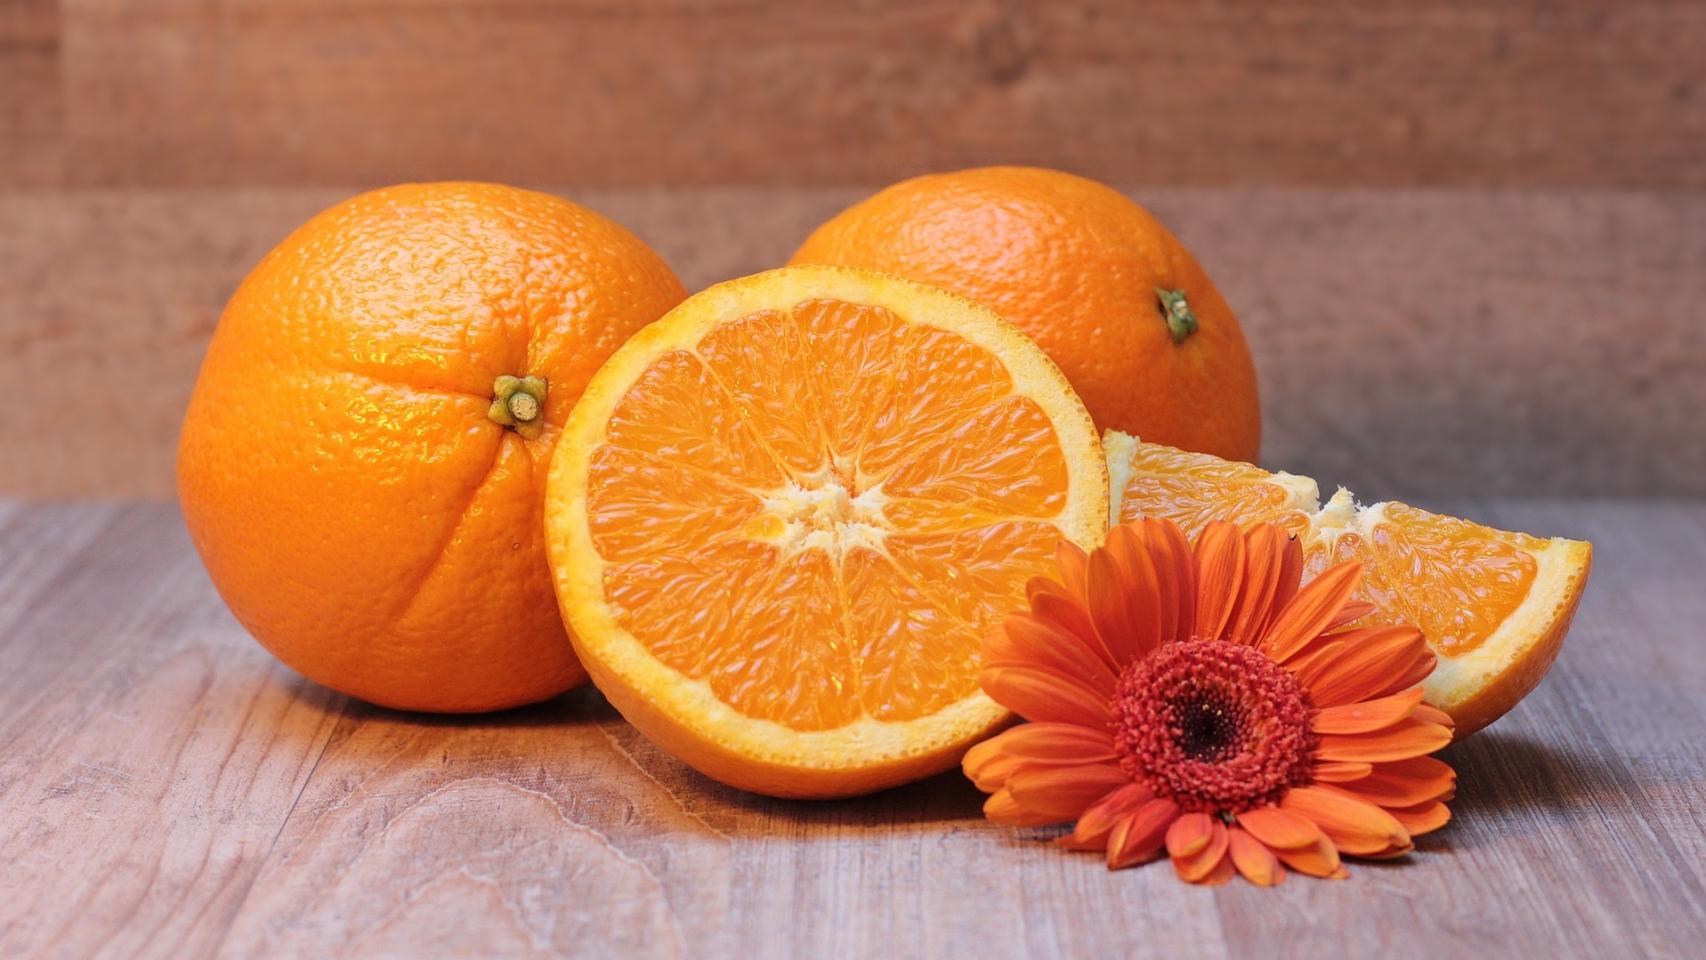 Cuál es el origen de la expresión 'Encontrar a tu media naranja'?